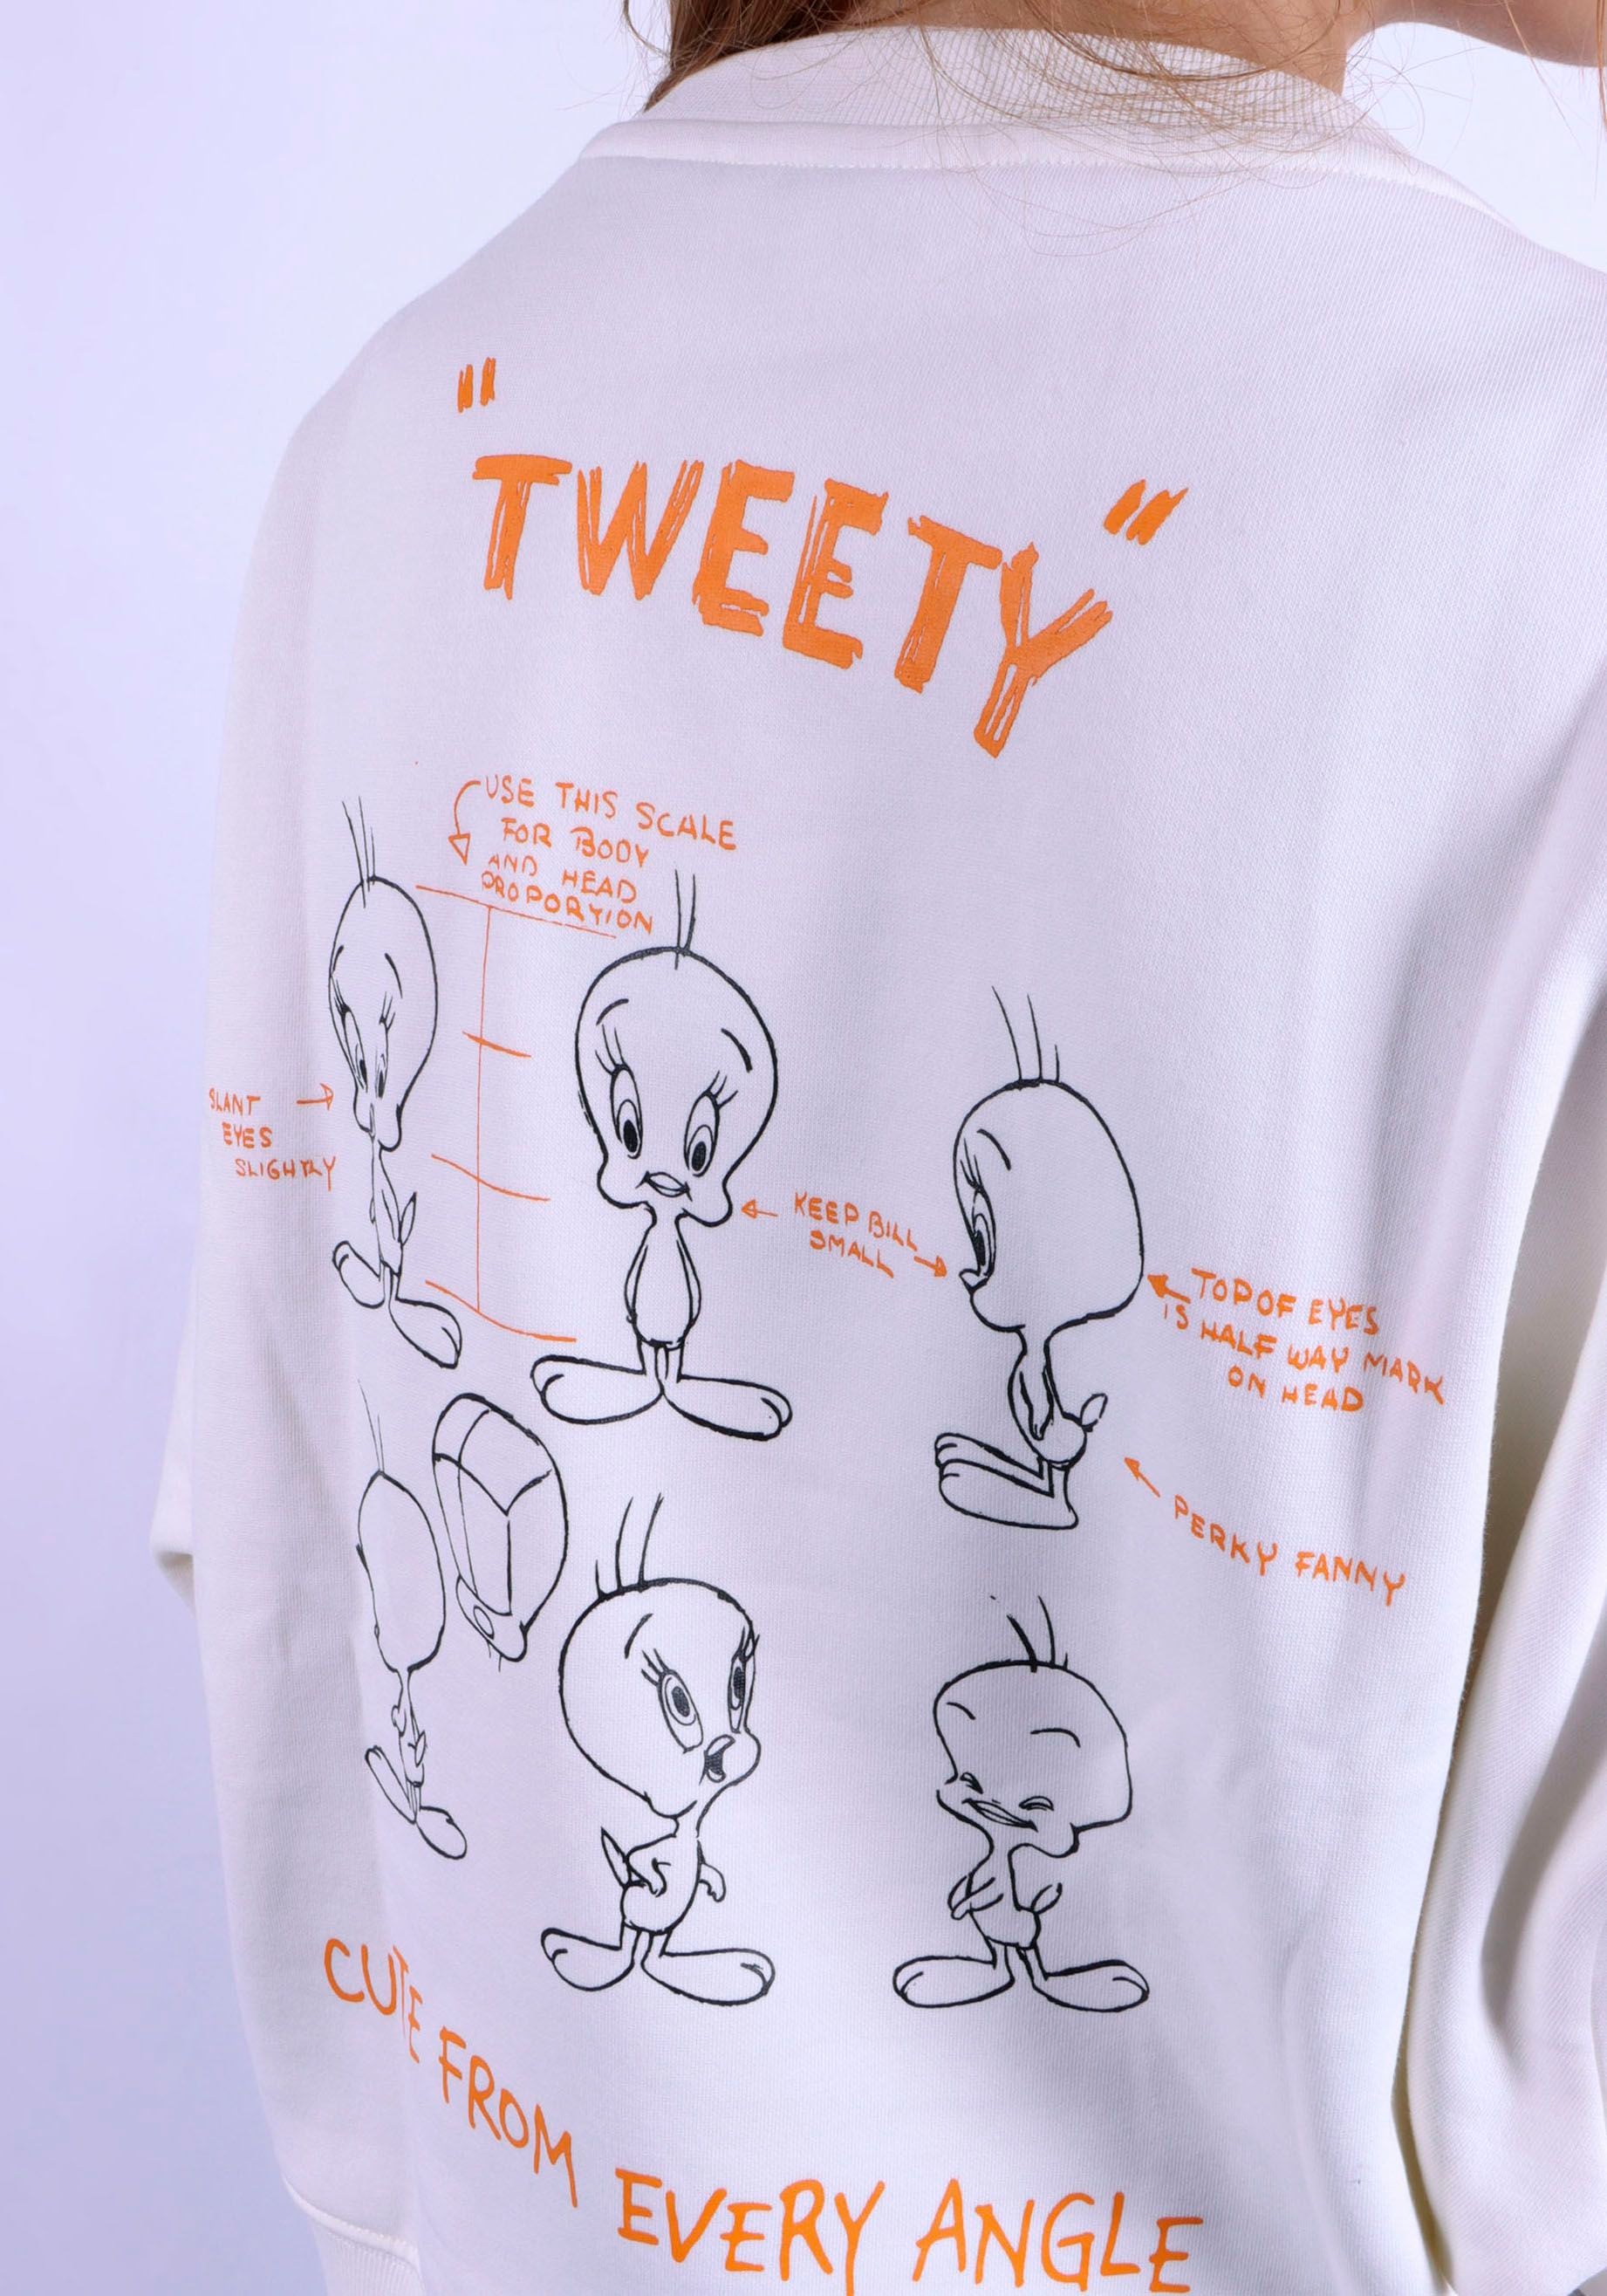 Capelli New York Sweatshirt, Tweety Character Lizenz Design auf Vorder- & Rückseite.